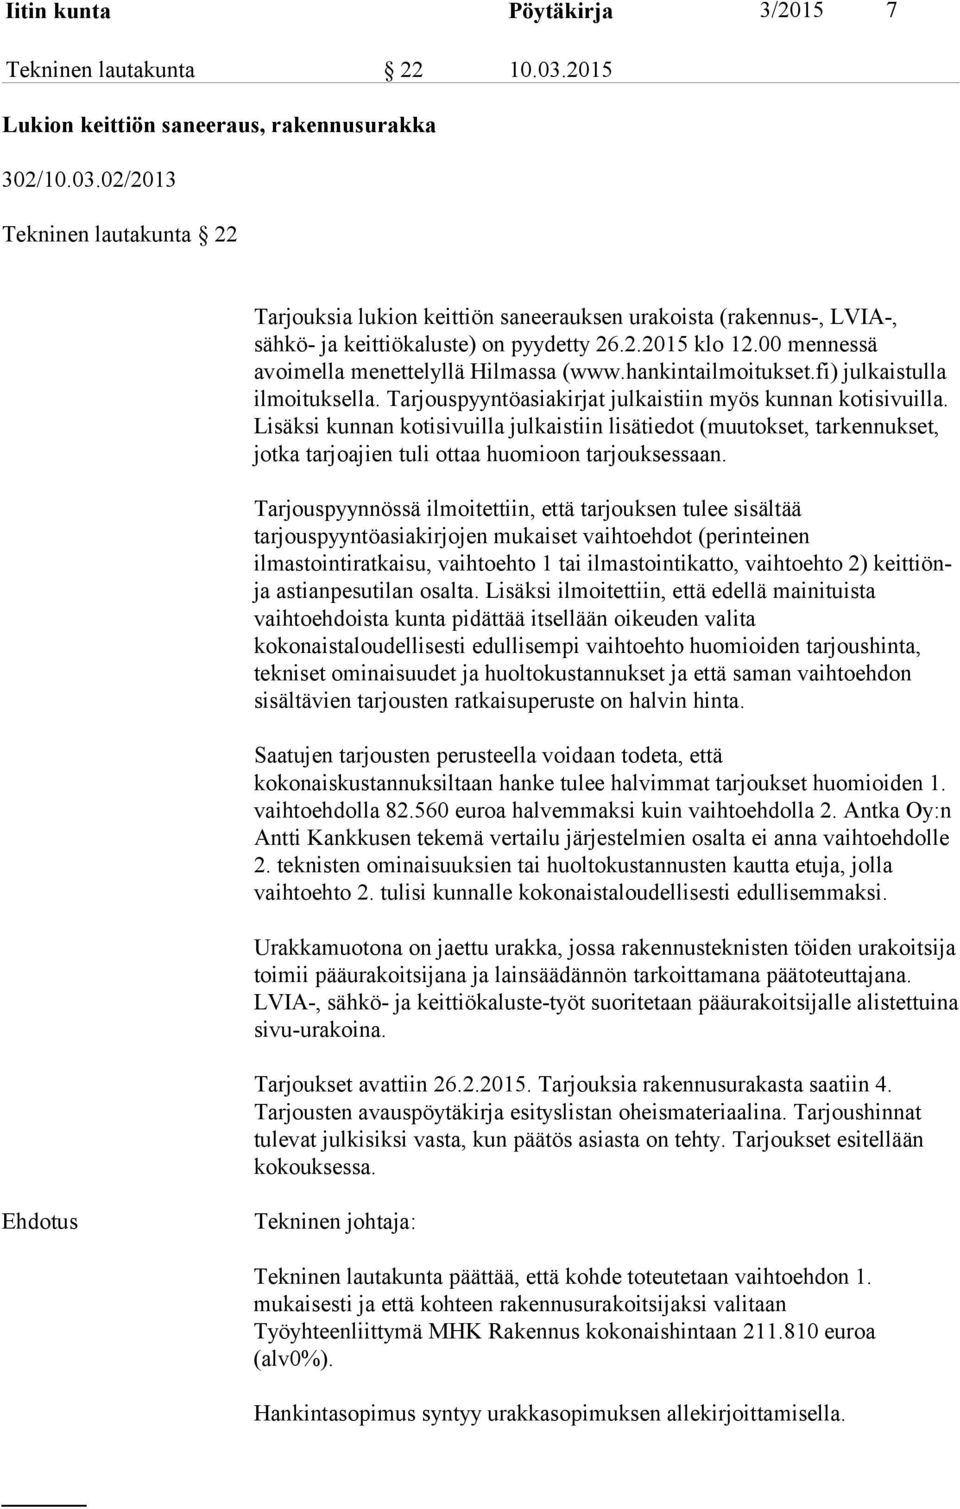 00 mennessä avoimella menettelyllä Hilmassa (www.hankintailmoitukset.fi) julkaistulla ilmoituksella. Tarjouspyyntöasiakirjat julkaistiin myös kunnan kotisivuilla.